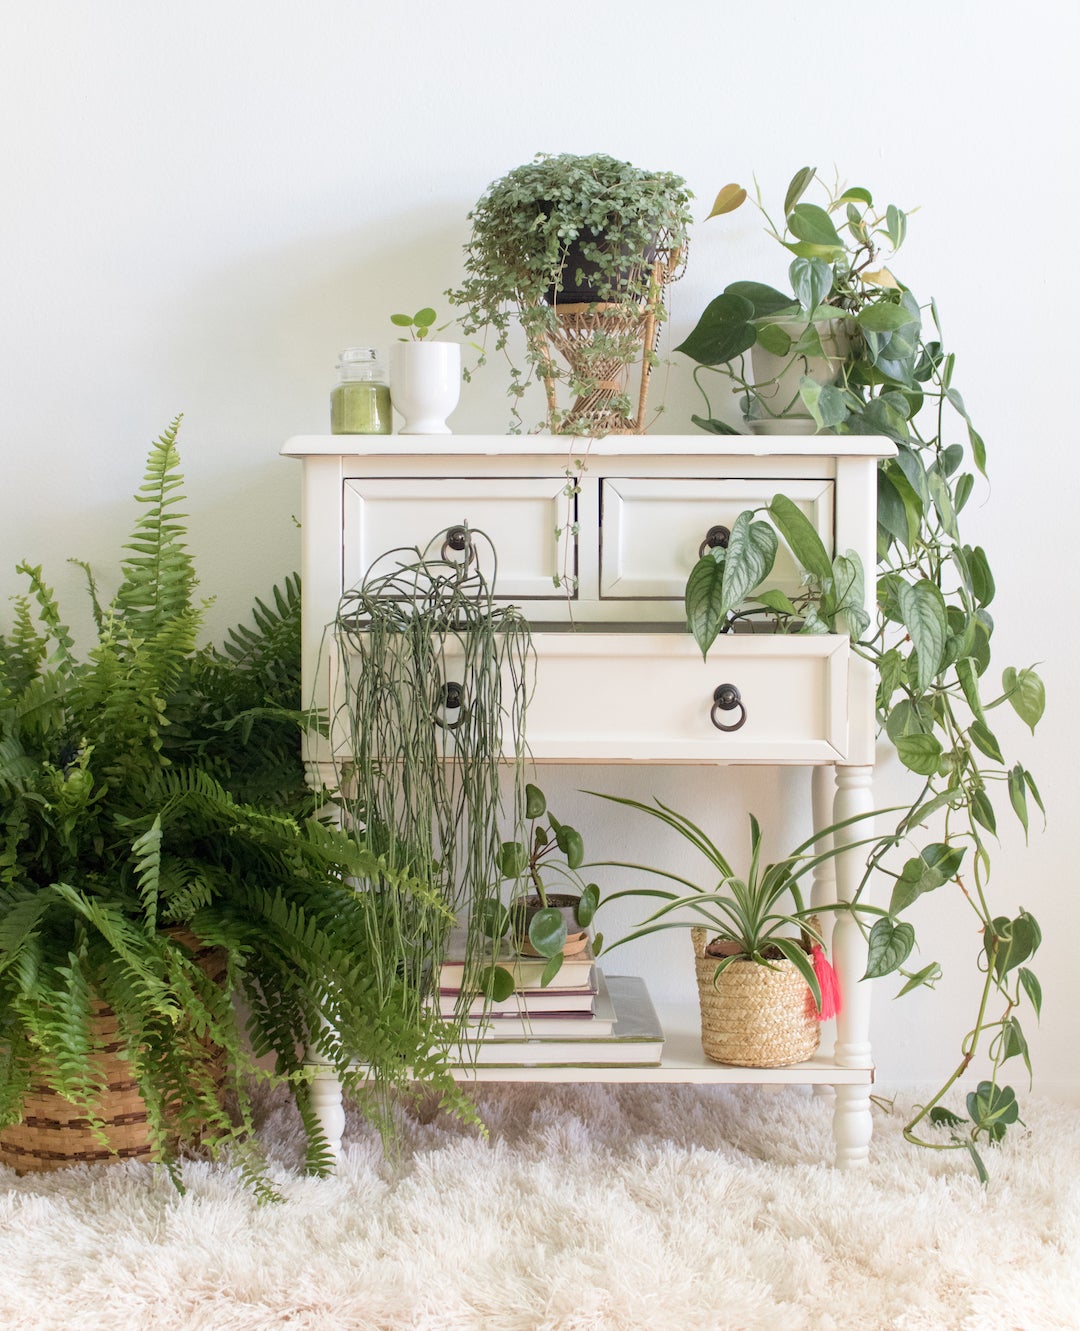 Shelf with plants